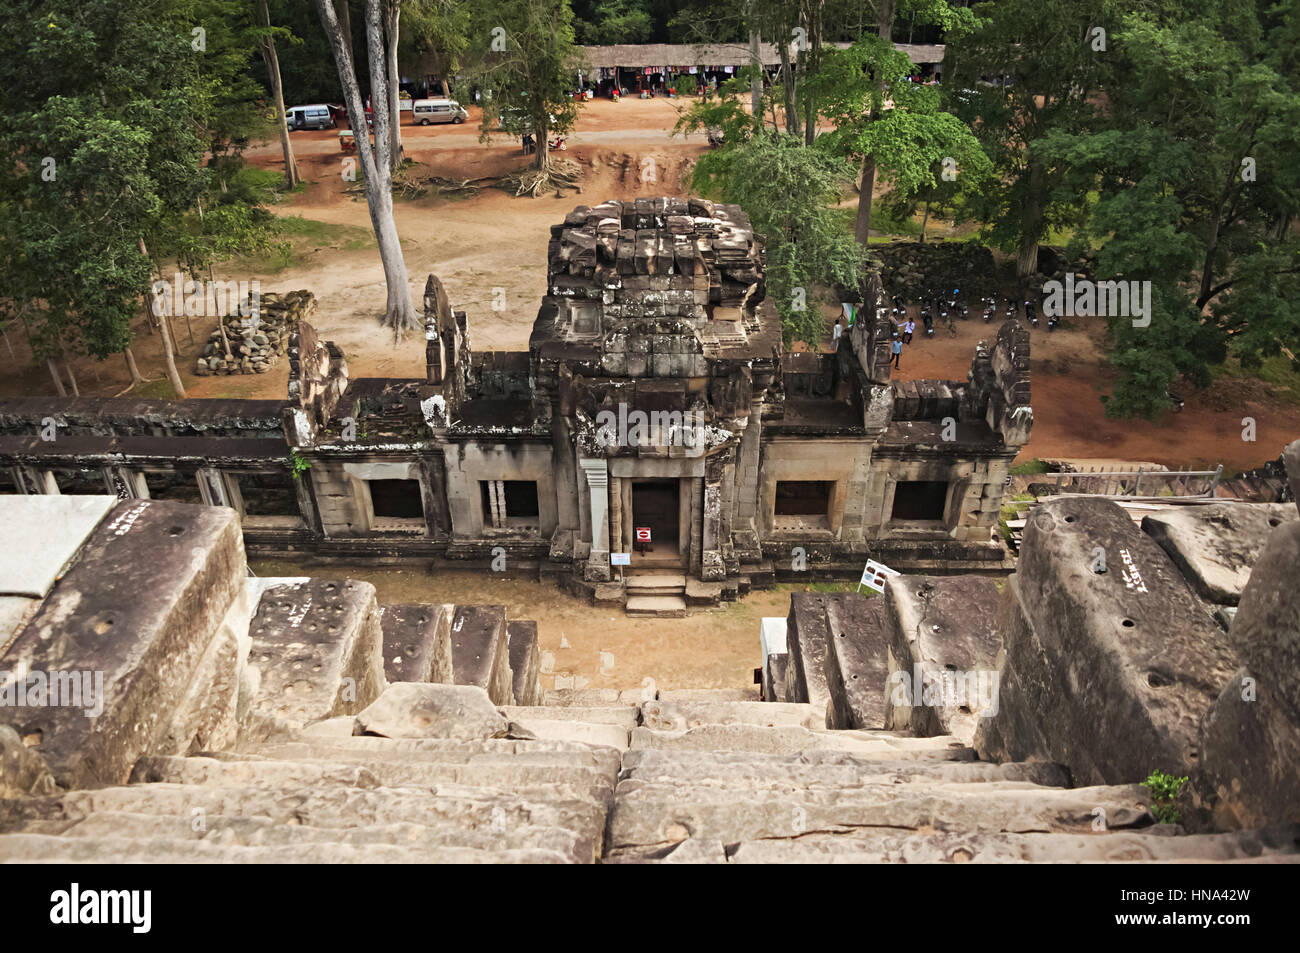 TA Keo Tempel von oben, Angkor, Kambodscha.  Massive unvollendete Bergtempel. Ca. 11 Jh. Stockfoto